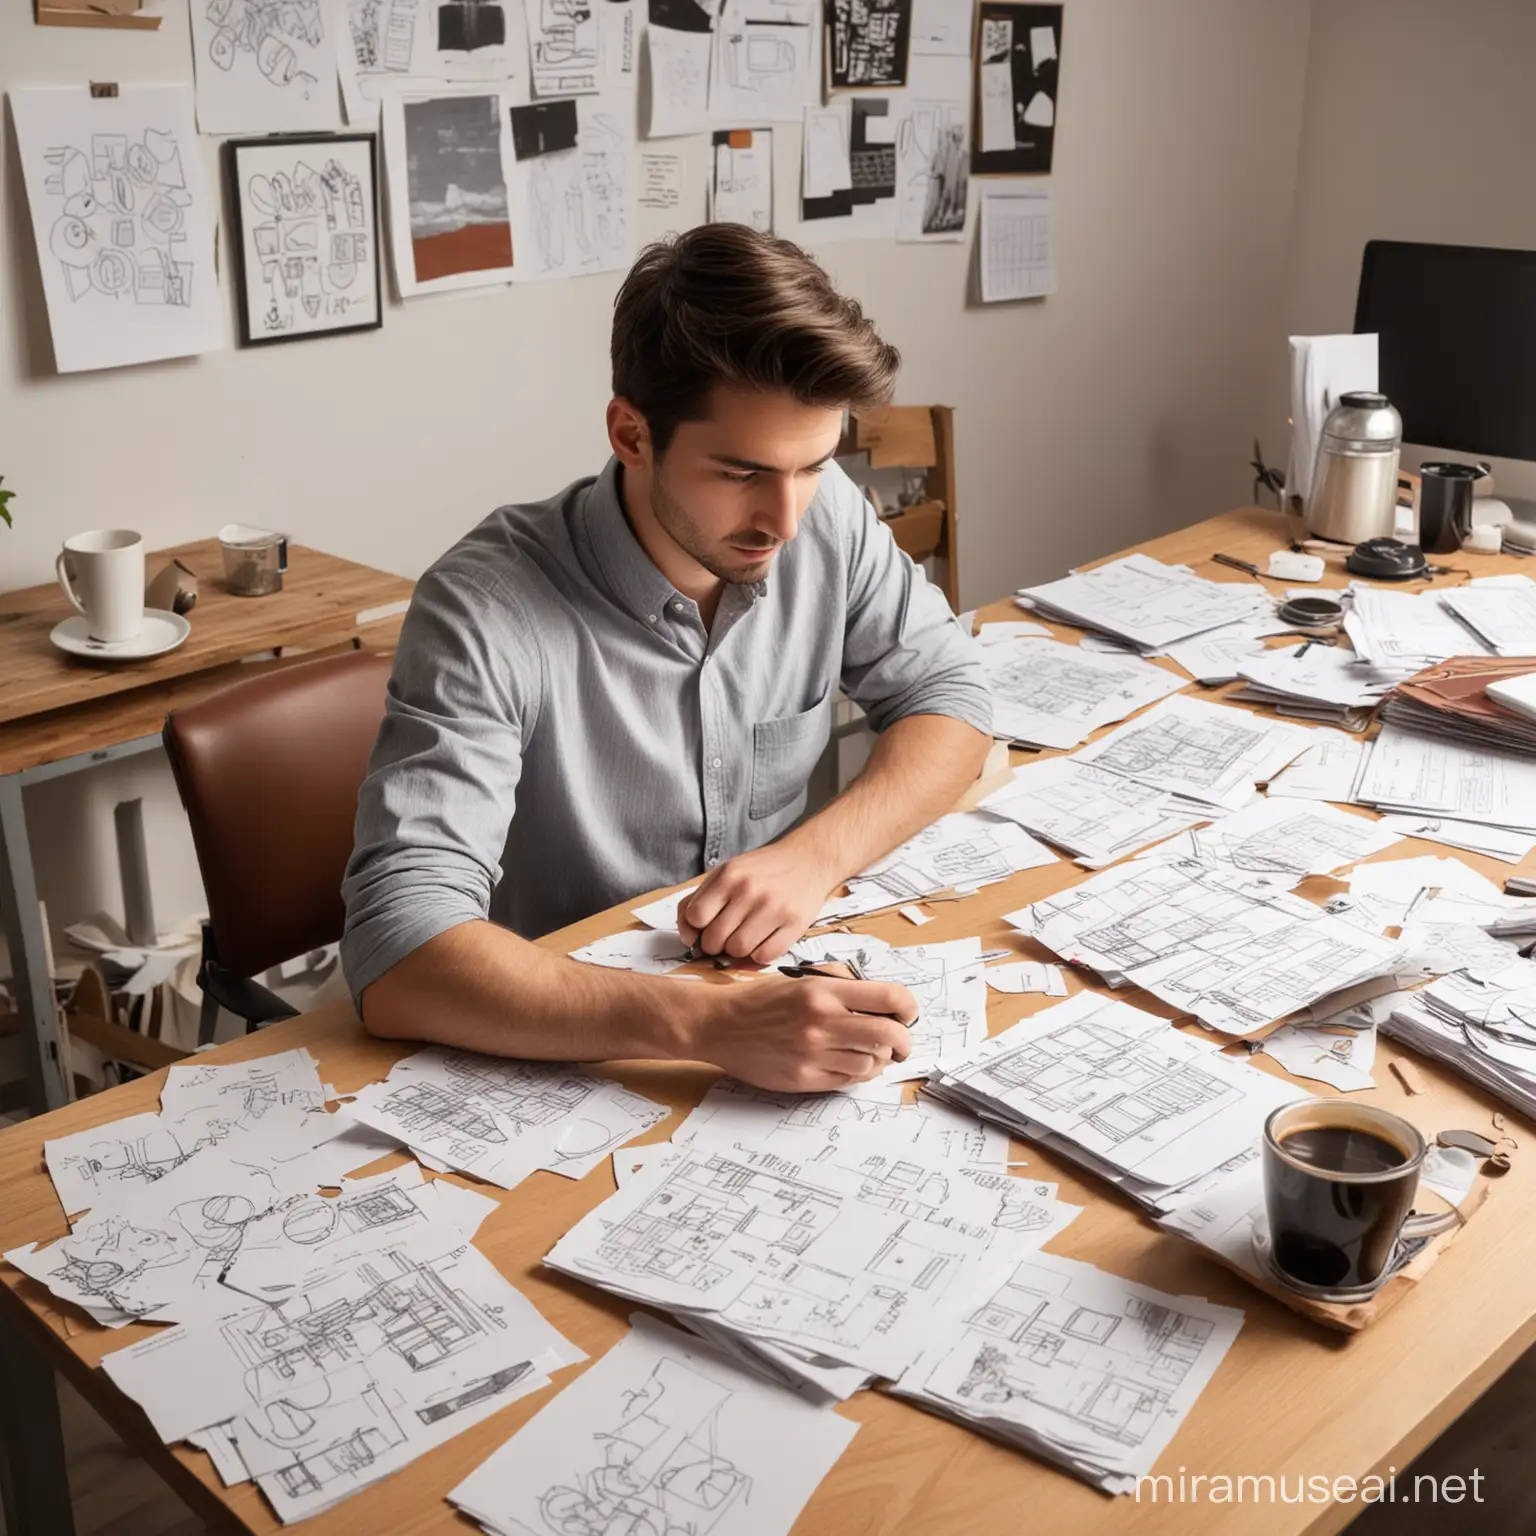  一个25岁成年男生，在工作设计岗位忙前忙后，无暇顾及，手忙脚乱，刚冲的咖啡，散落的设计稿堆叠在办公桌上，